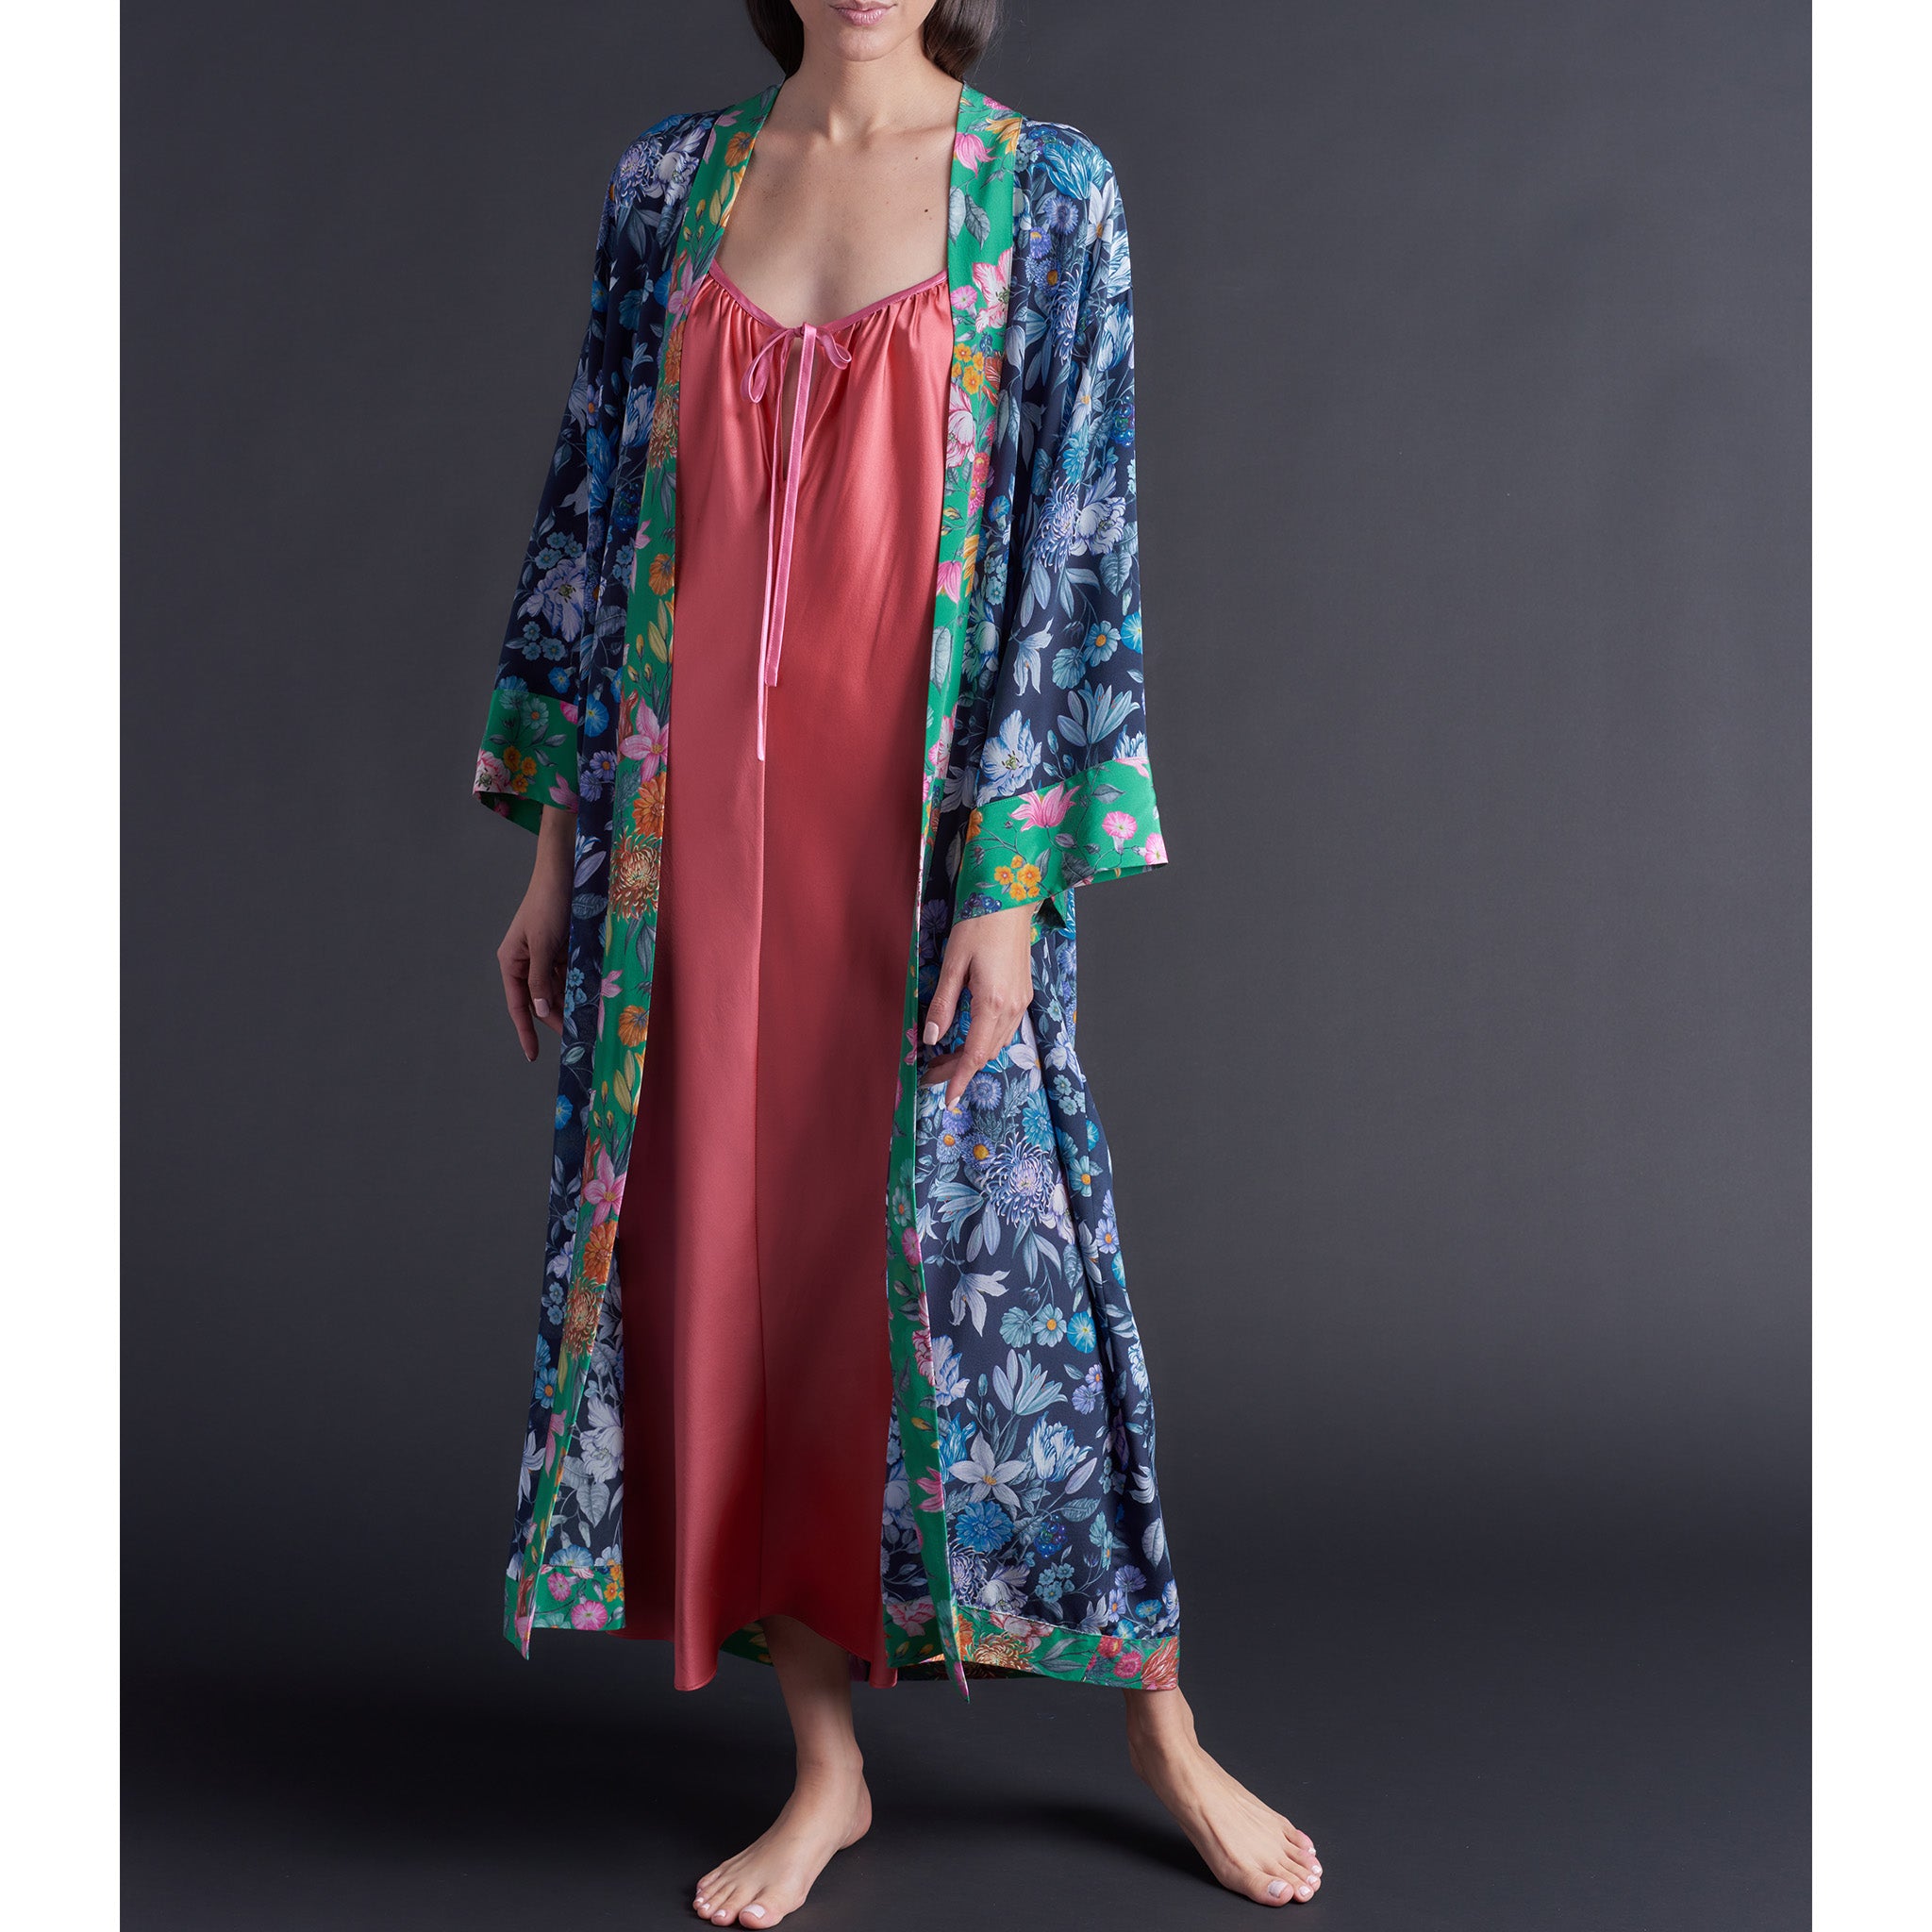 Asteria Kimono Robe in Stately Bouquet Liberty of London Print Silk Crepe De Chine